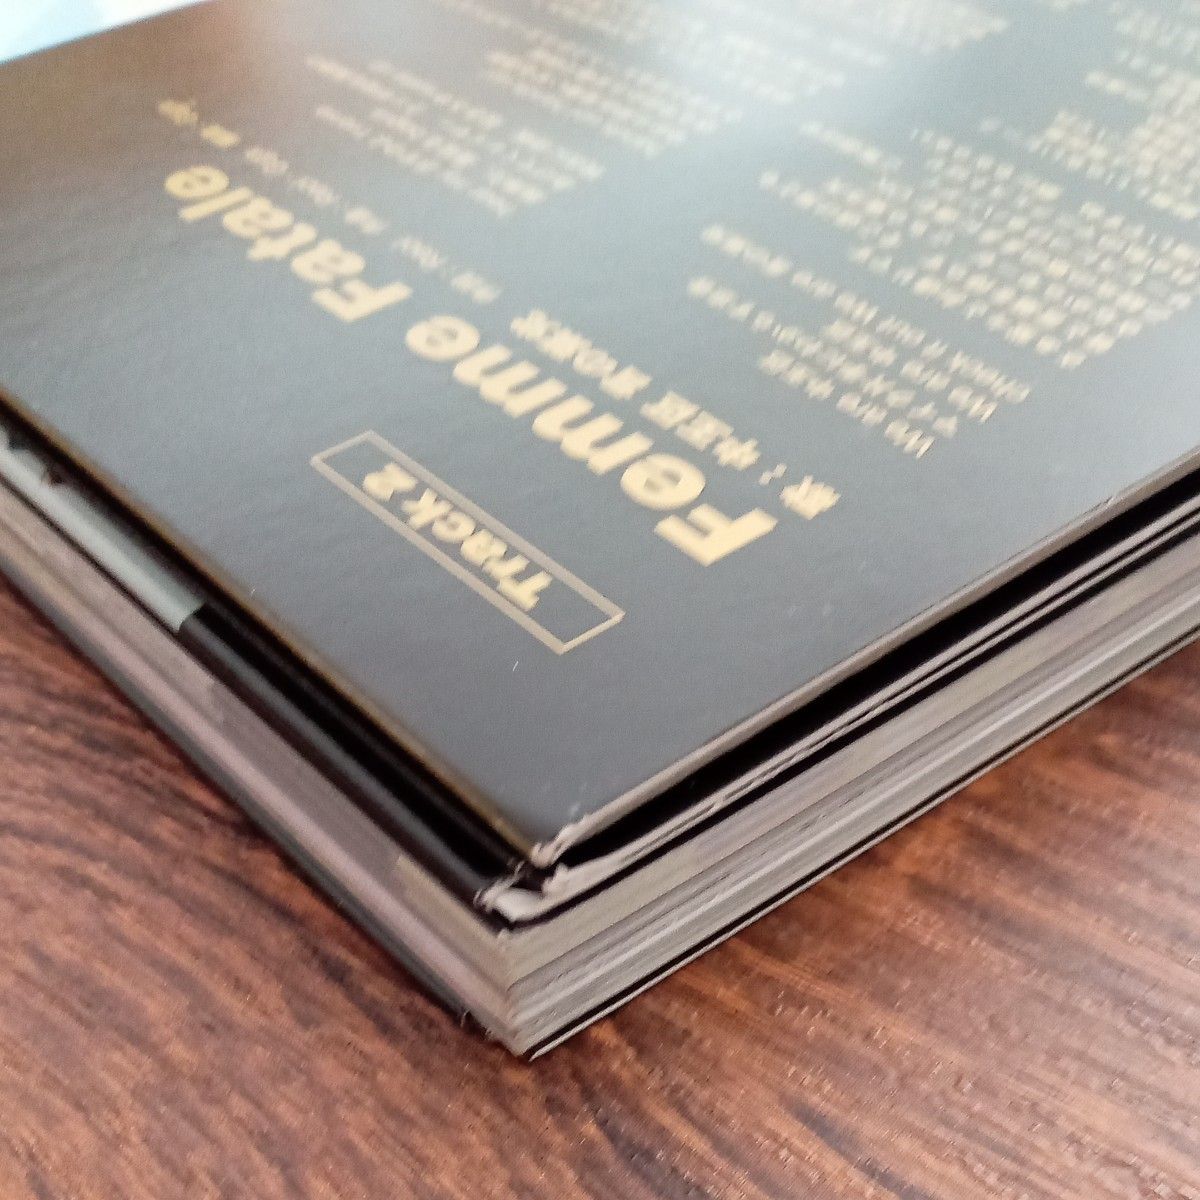 ヒプシノスマイク　オフィシャルガイドブック　CDS付き初回限定盤